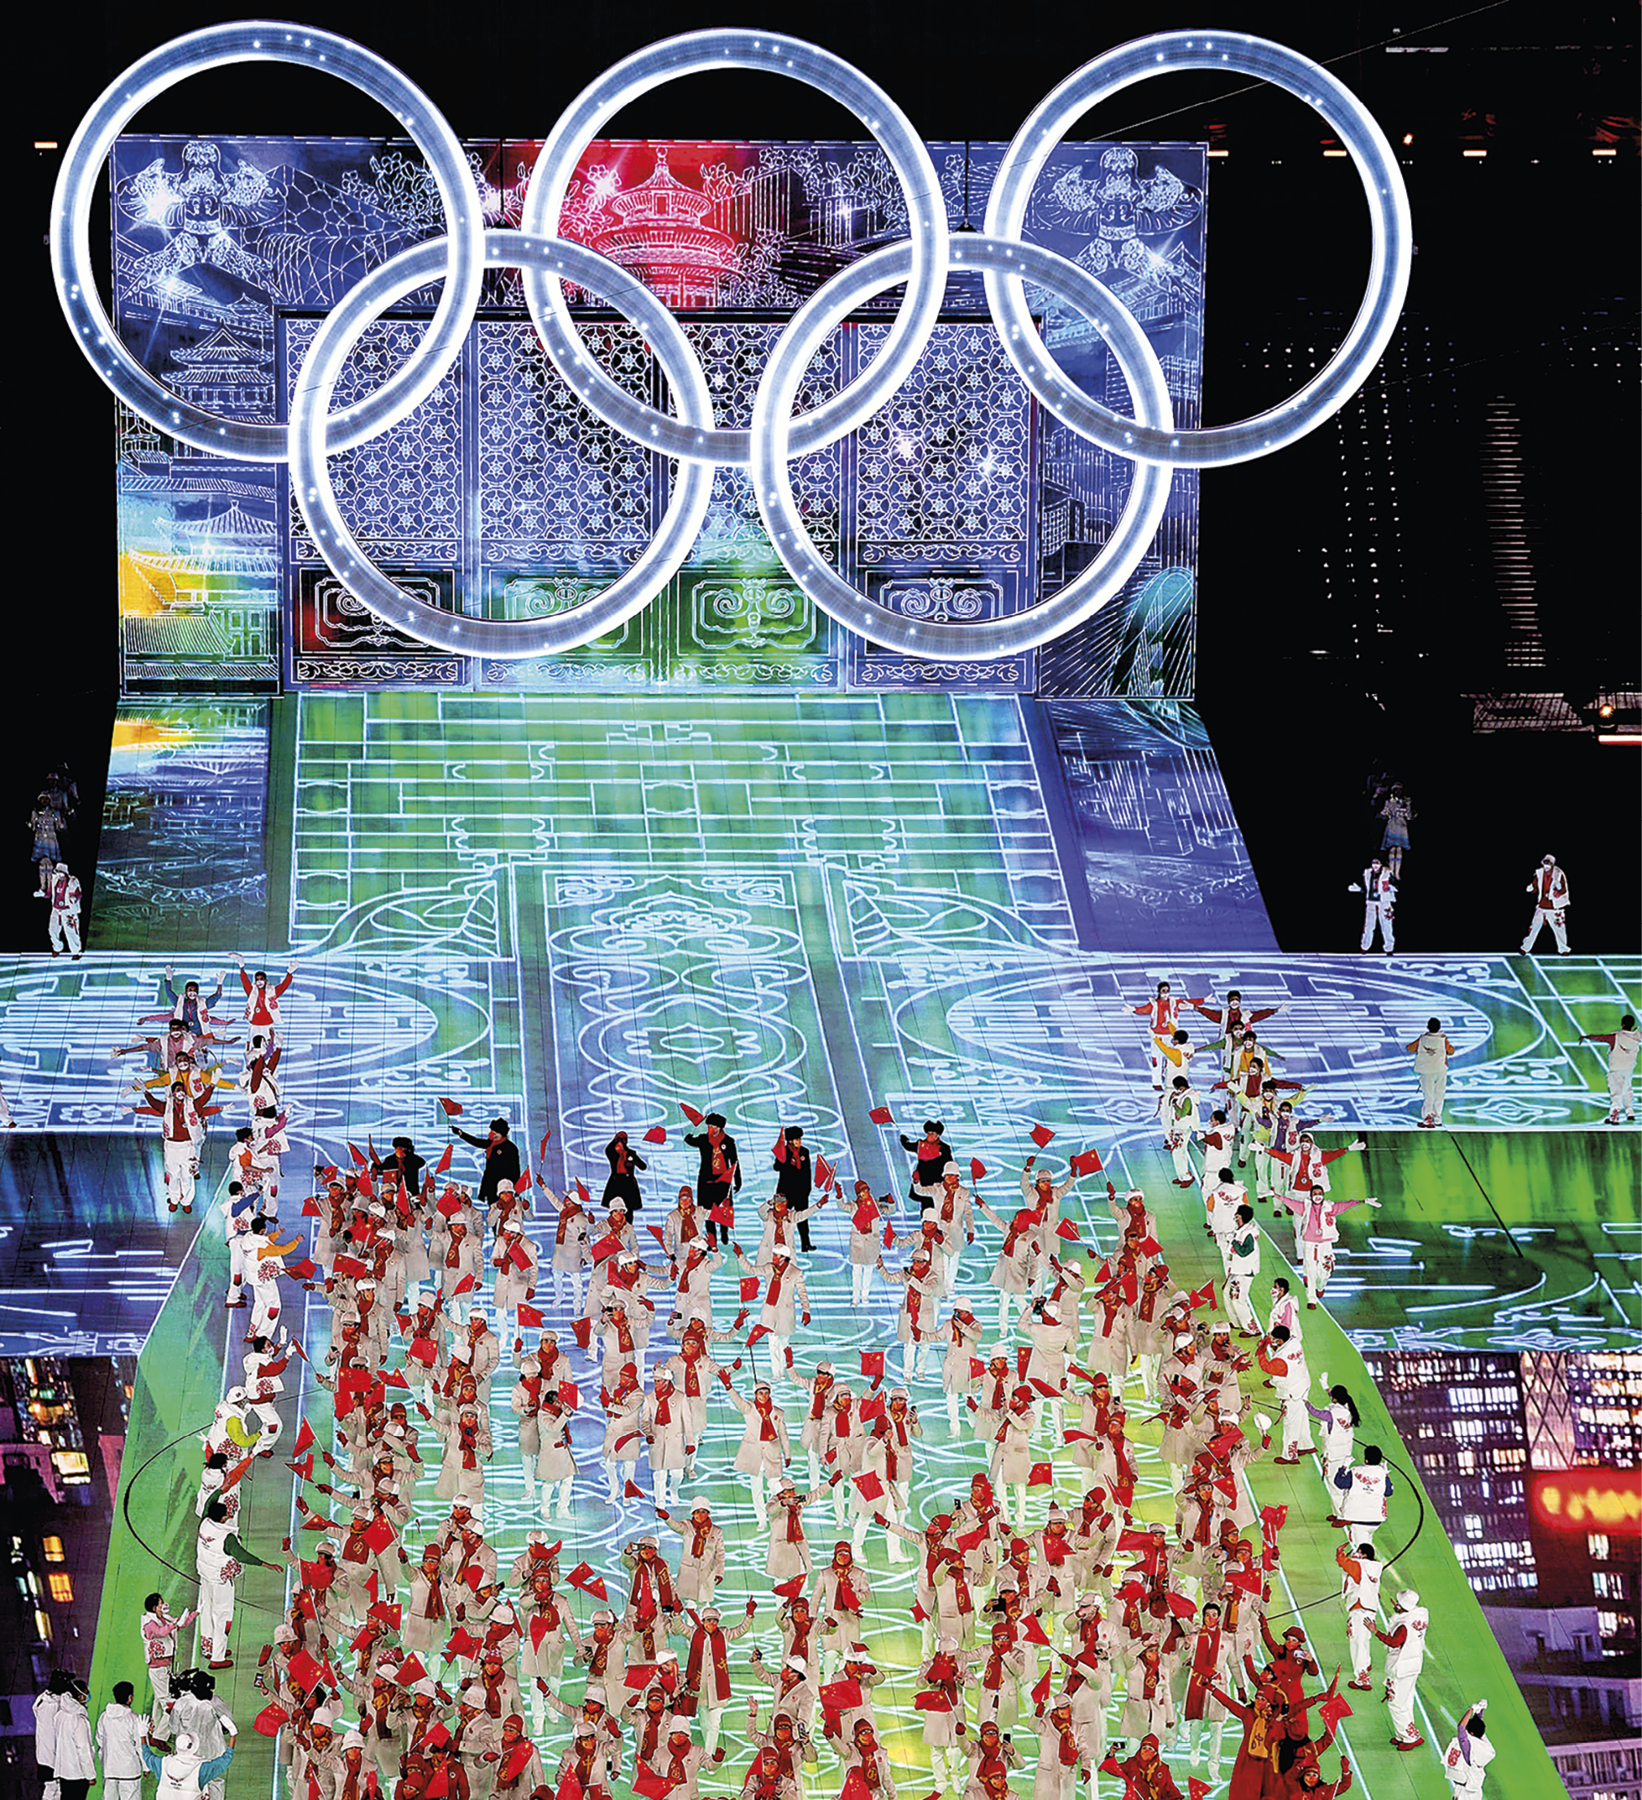 Fotografia. Vista de um palco com luzes nas cores azul e verde; em cima dele há diversas pessoas vestindo roupas brancas, vermelhas e pretas, segurando pequenas bandeiras vermelhas. No segundo plano, o símbolo das Olimpíadas, composto por cinco aros interligados.